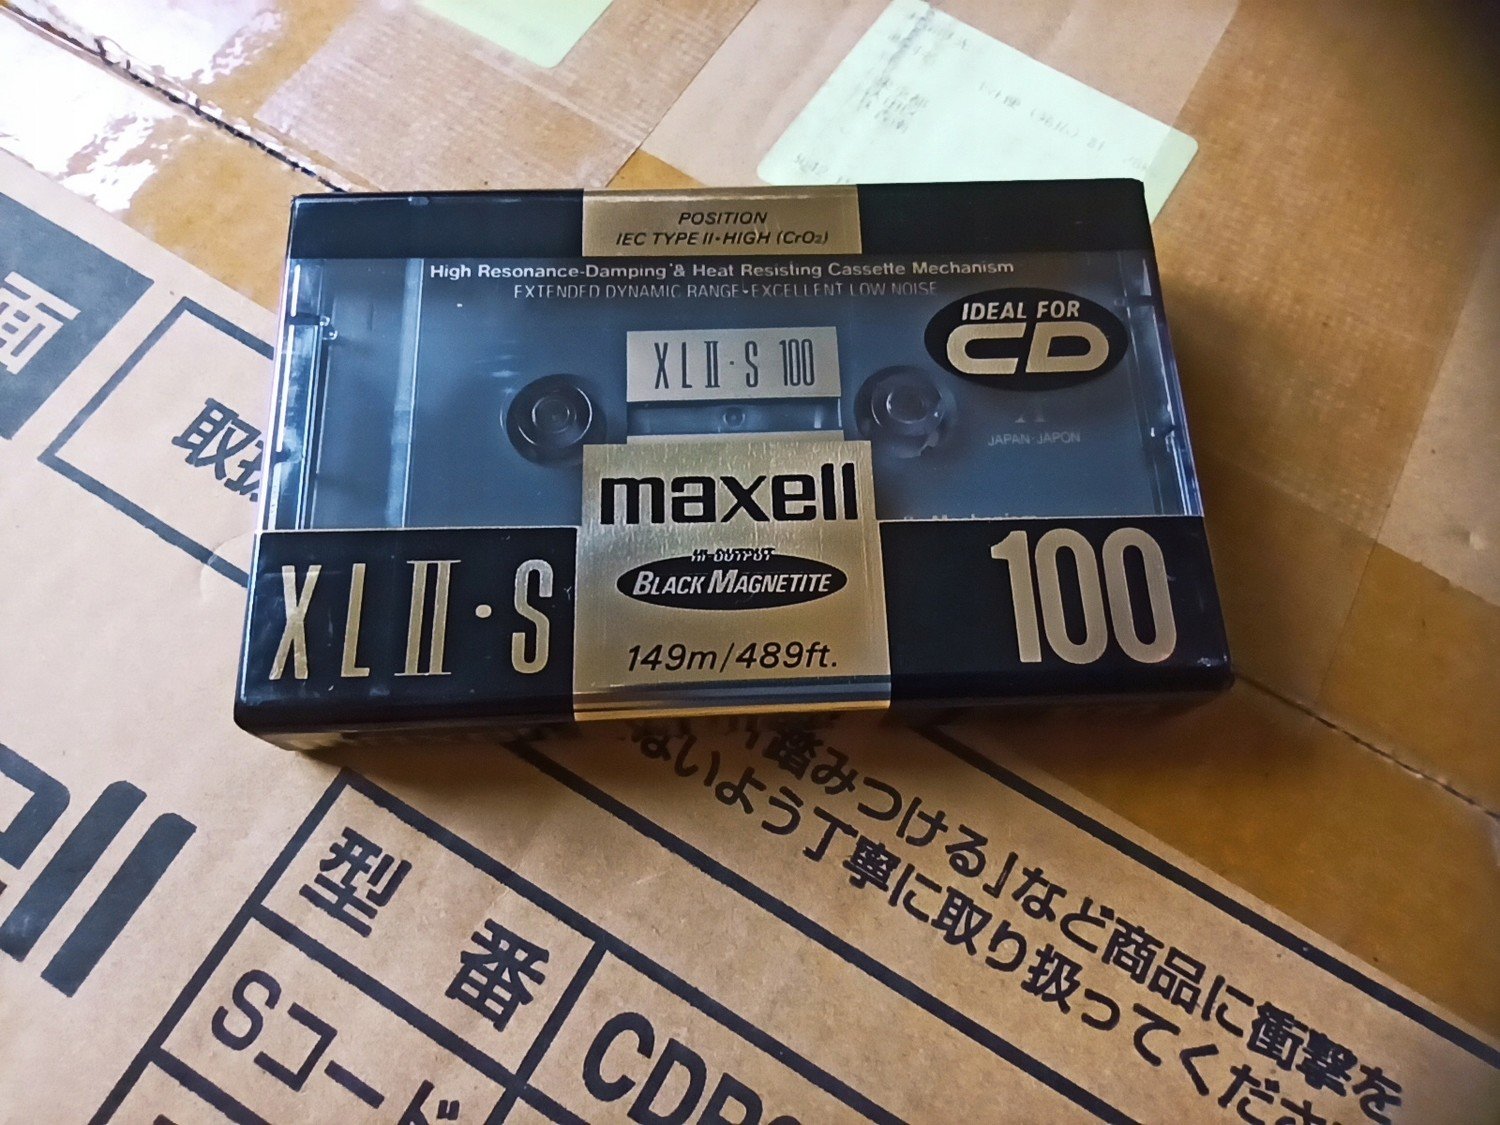 Maxell XL Ii-s 100 1991r. Nová 1ks,